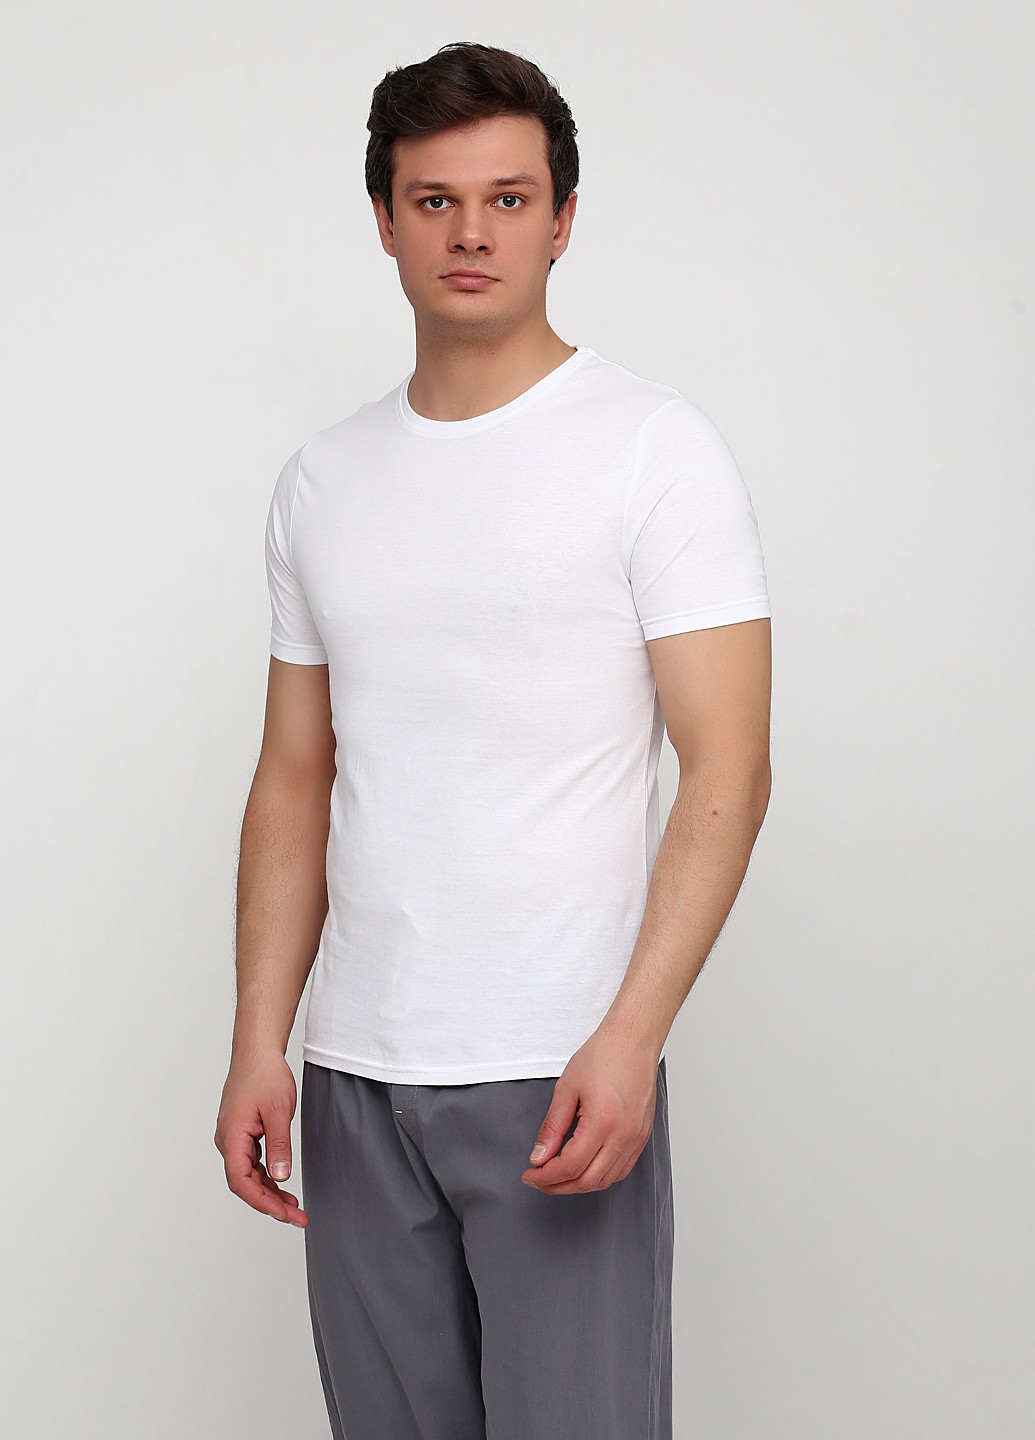 Белая футболка Livergy